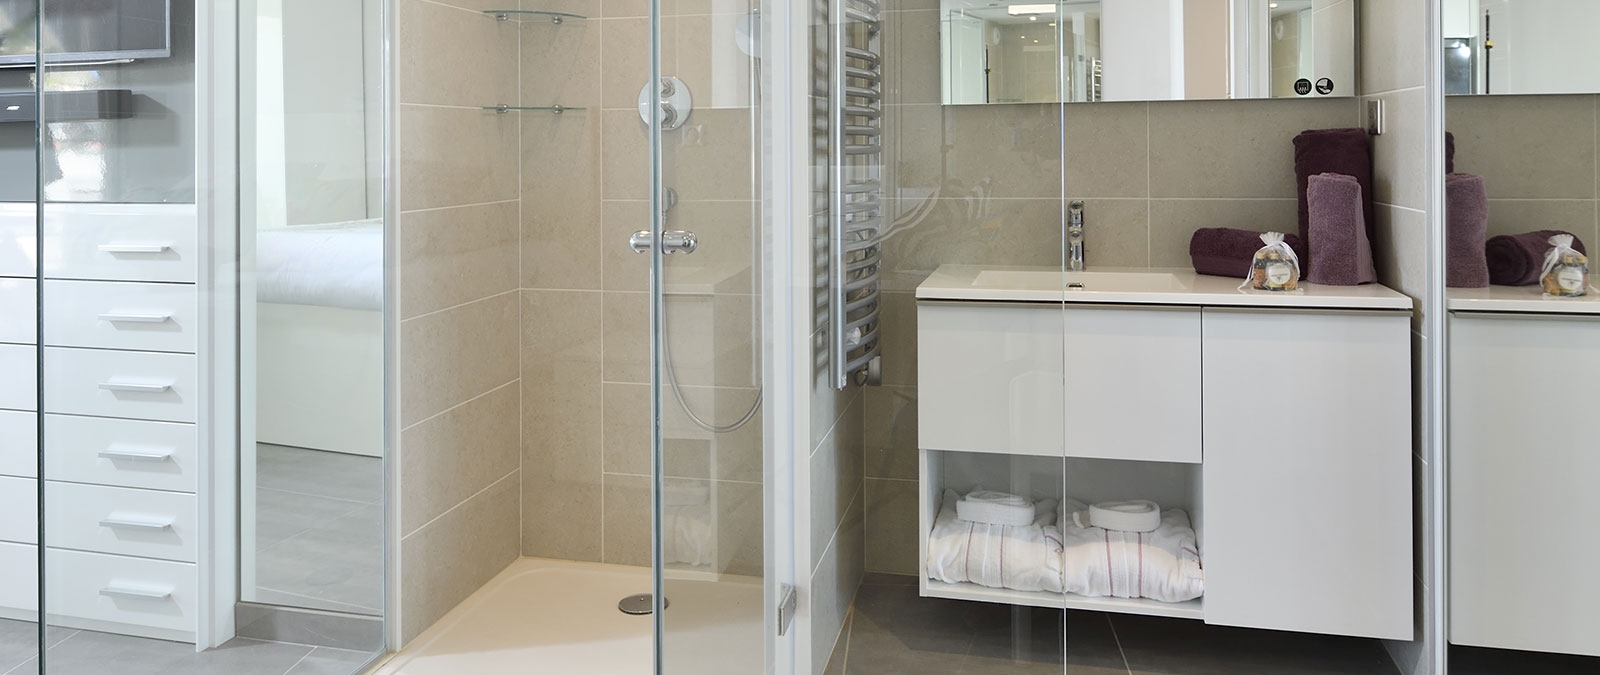 Espace douche avec douche à l'italienne suite junior premium au RDC